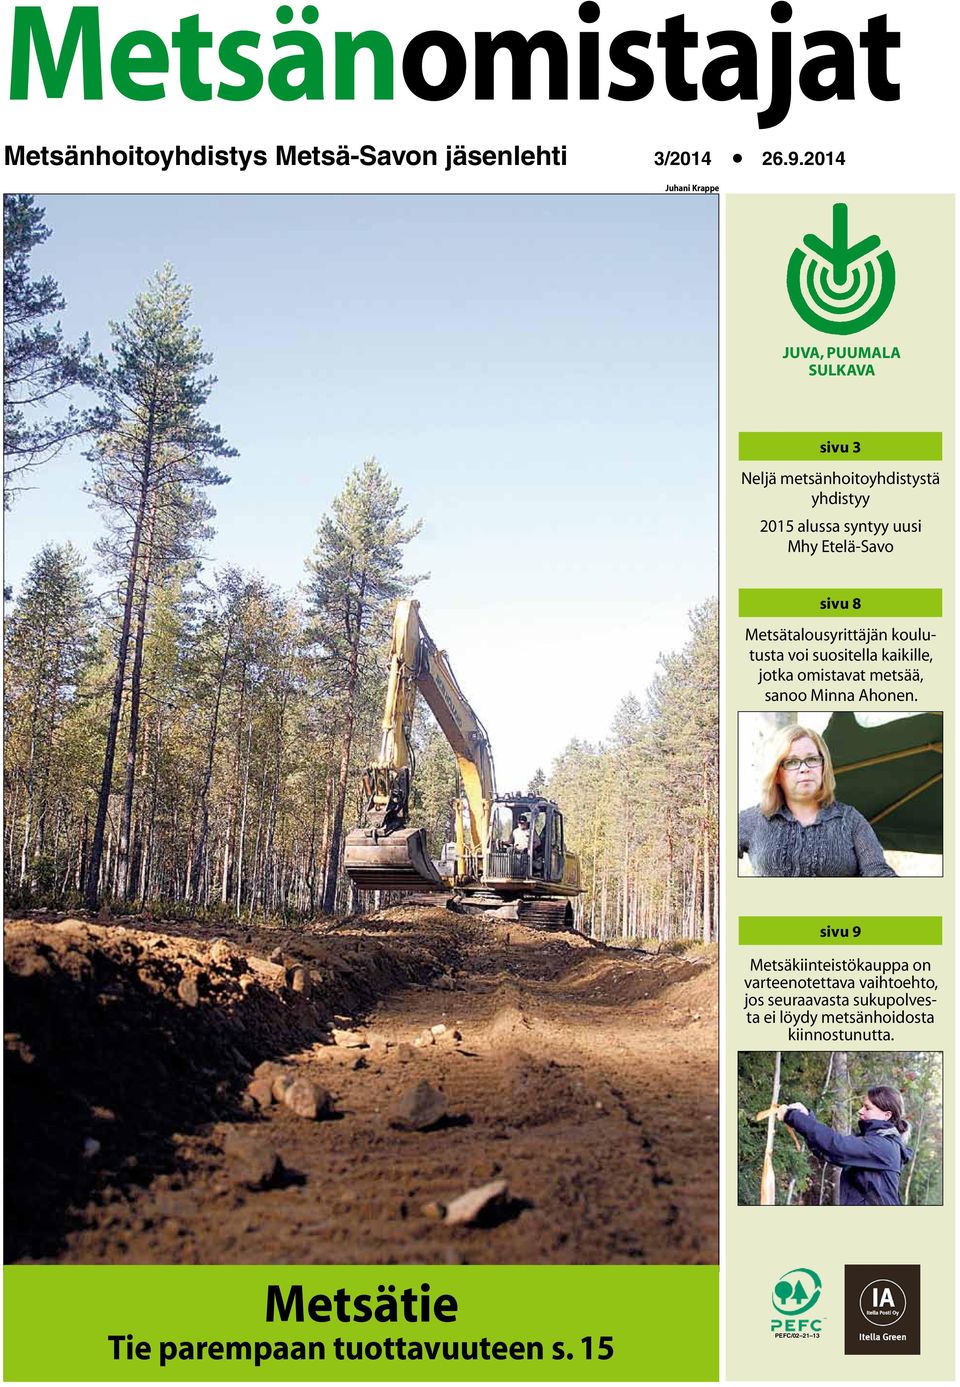 Etelä-Savo sivu 8 Metsätalousyrittäjän koulutusta voi suositella kaikille, jotka omistavat metsää, sanoo Minna Ahonen.